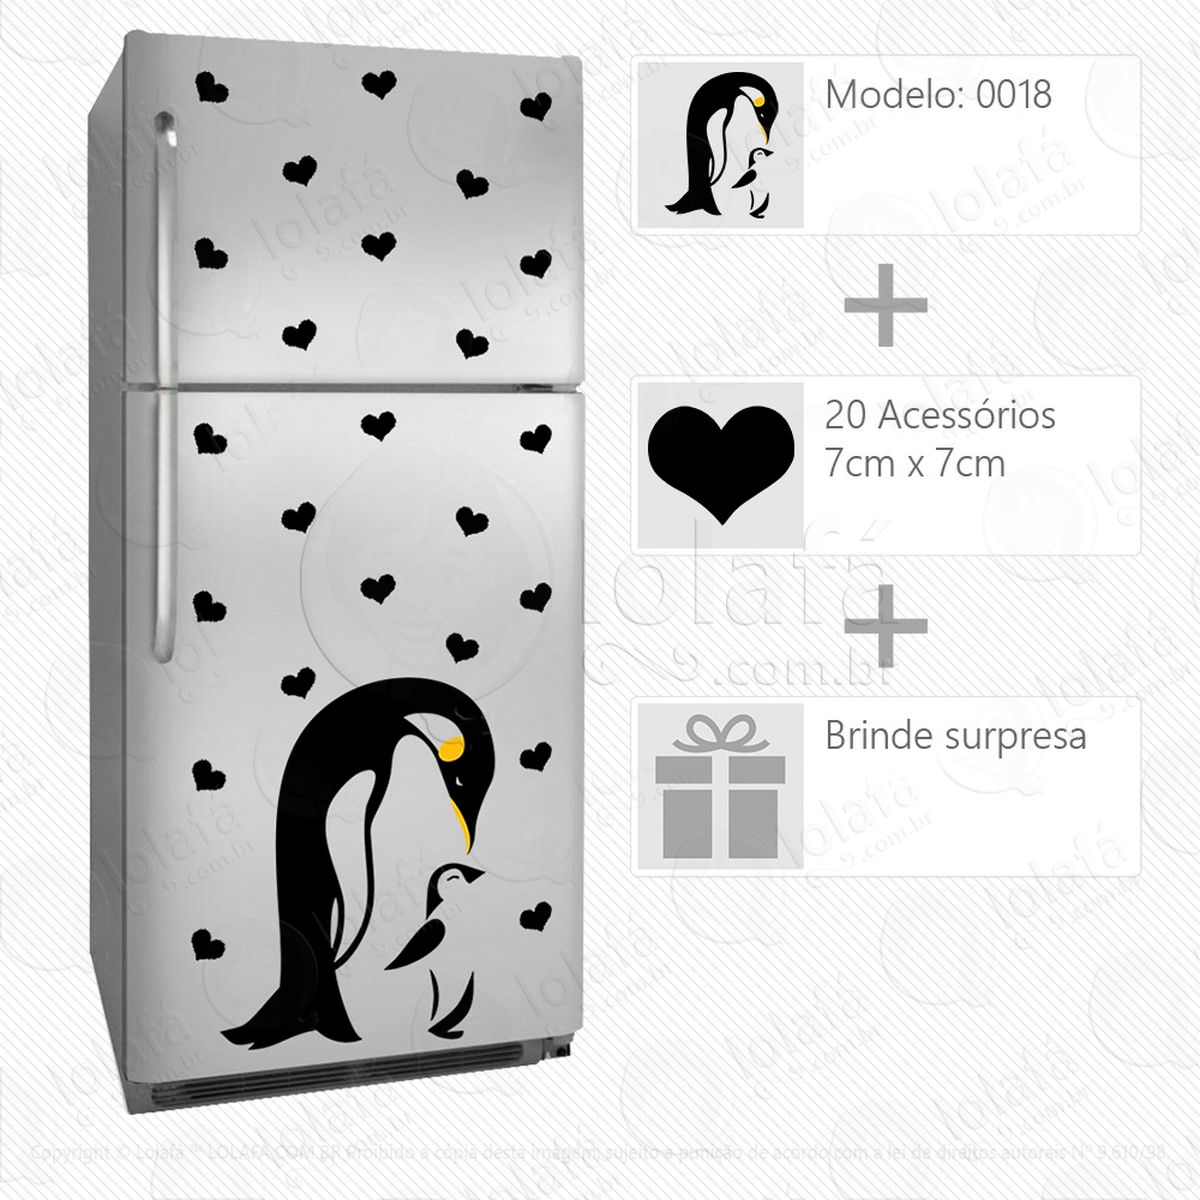 pinguins adesivo para geladeira e frigobar - mod:18